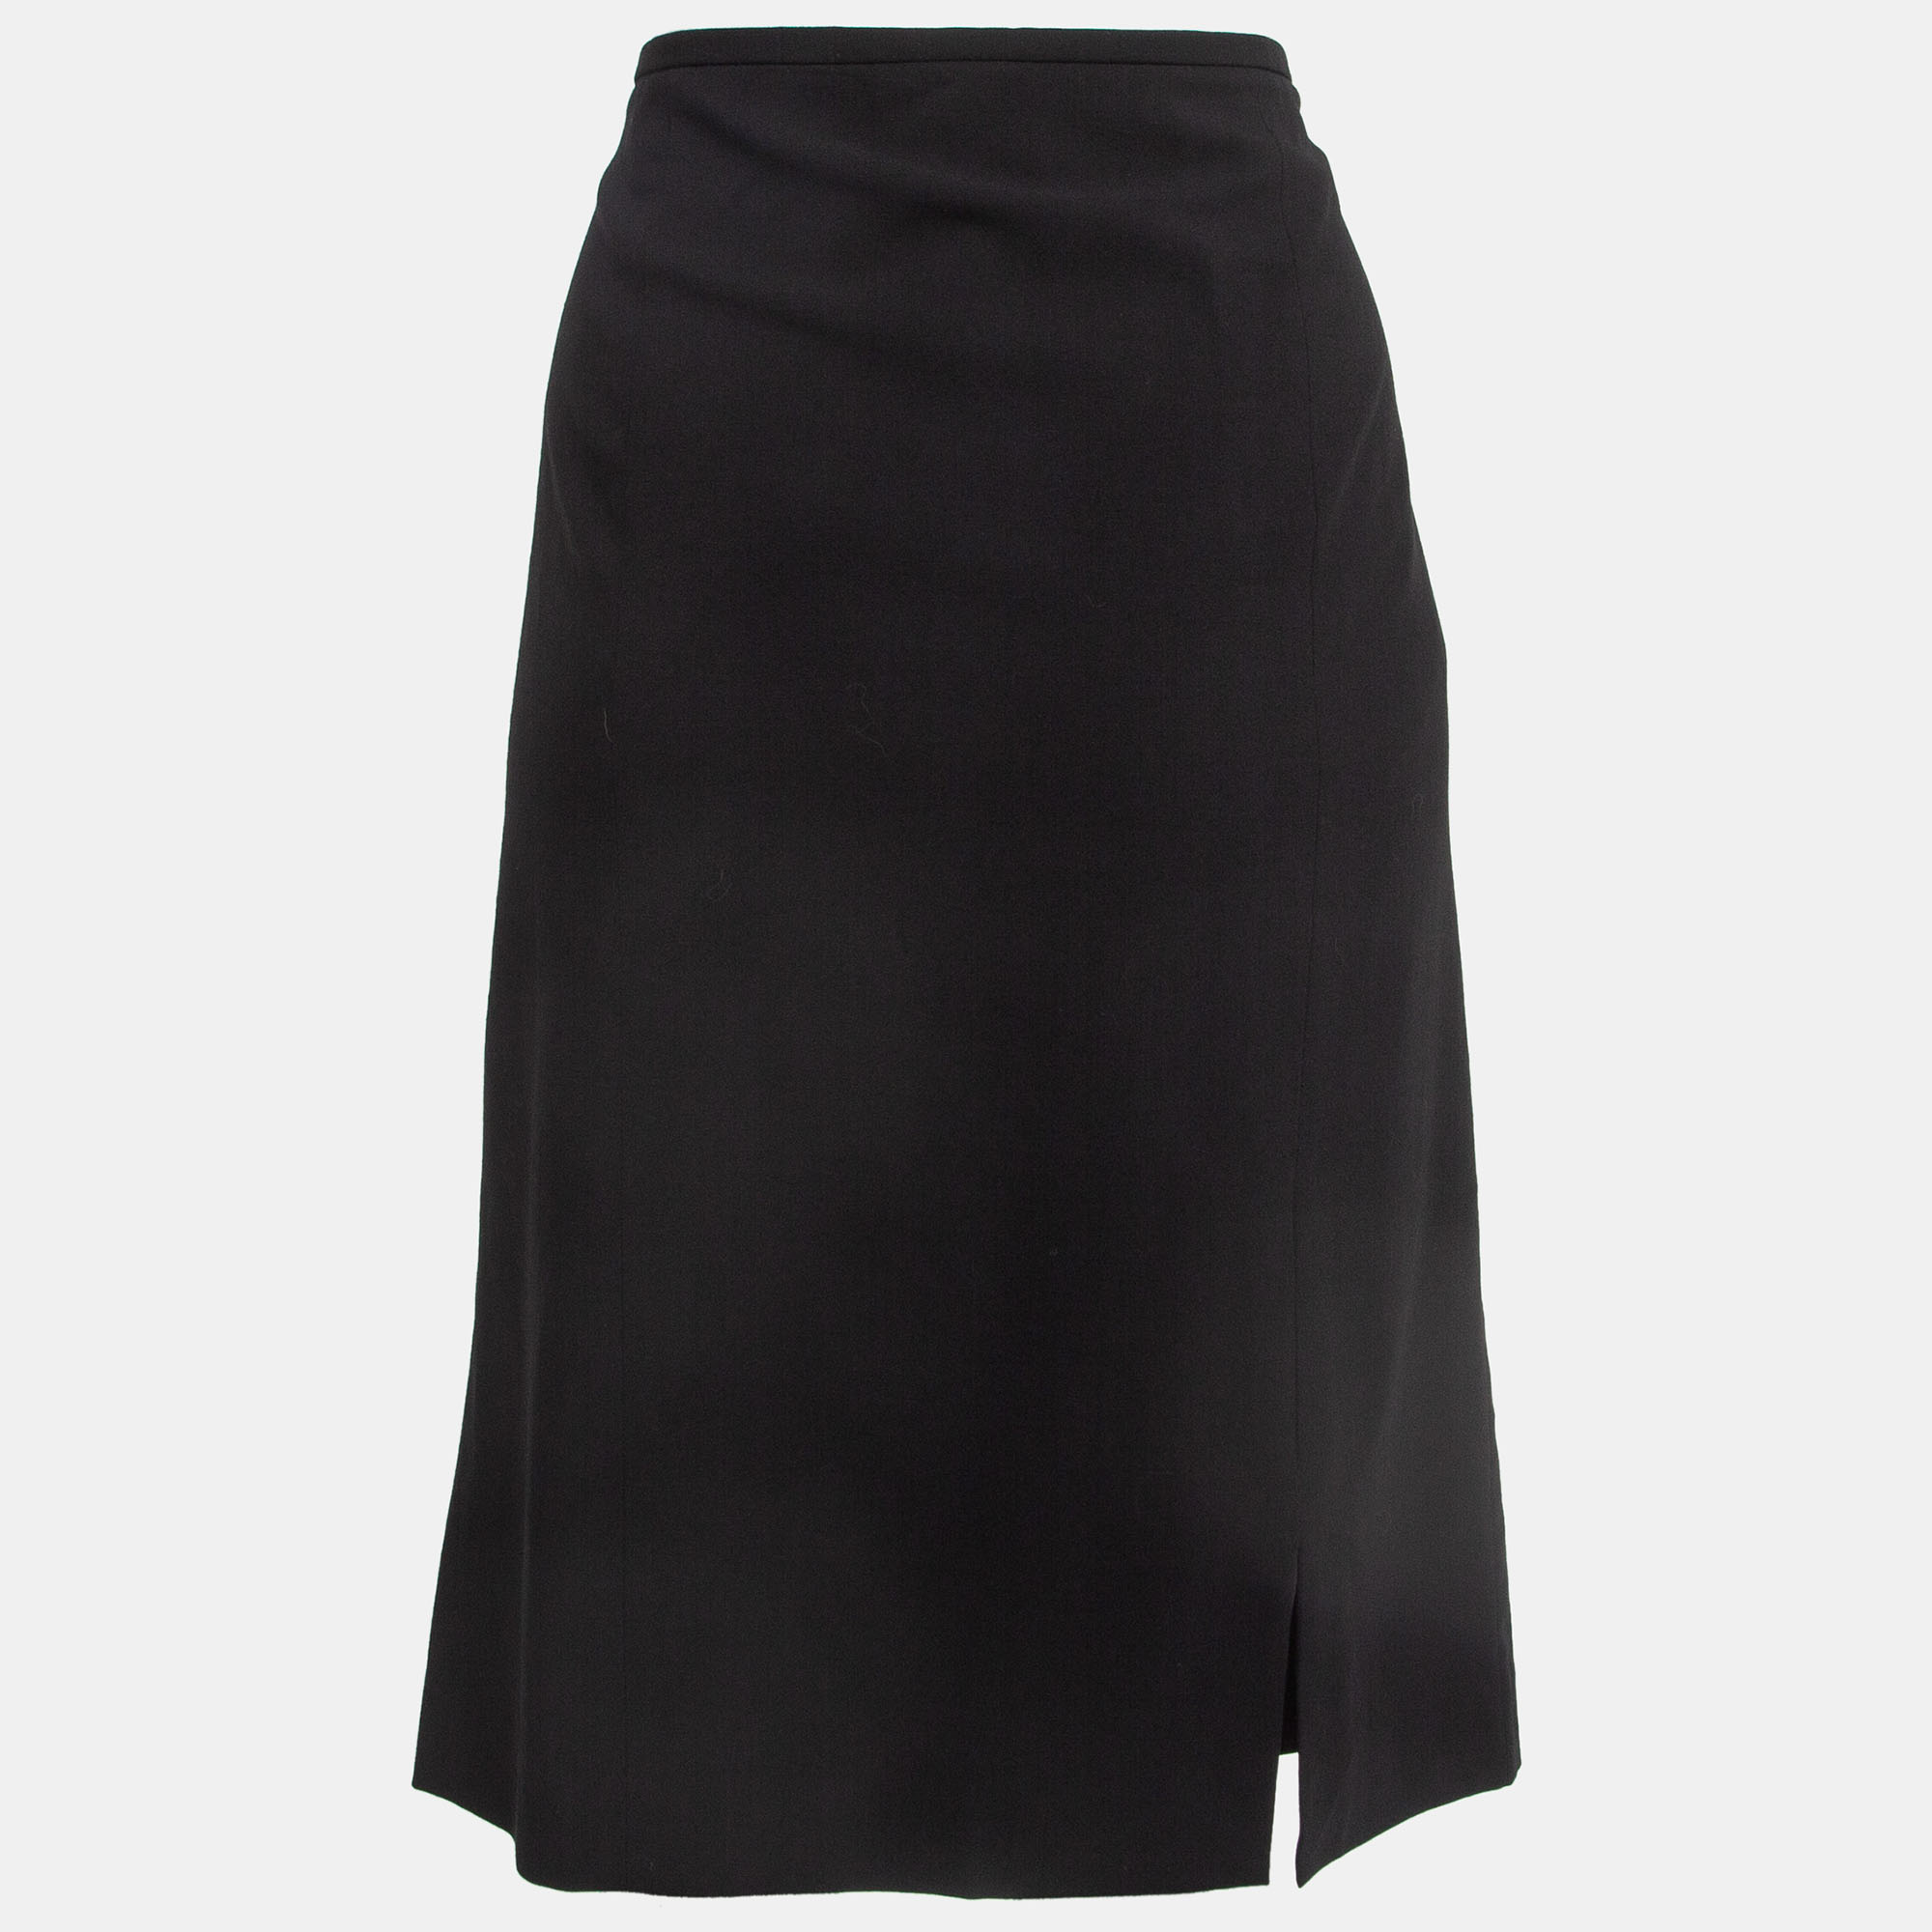 

Armani Collezioni Black Crepe Formal Pencil Skirt